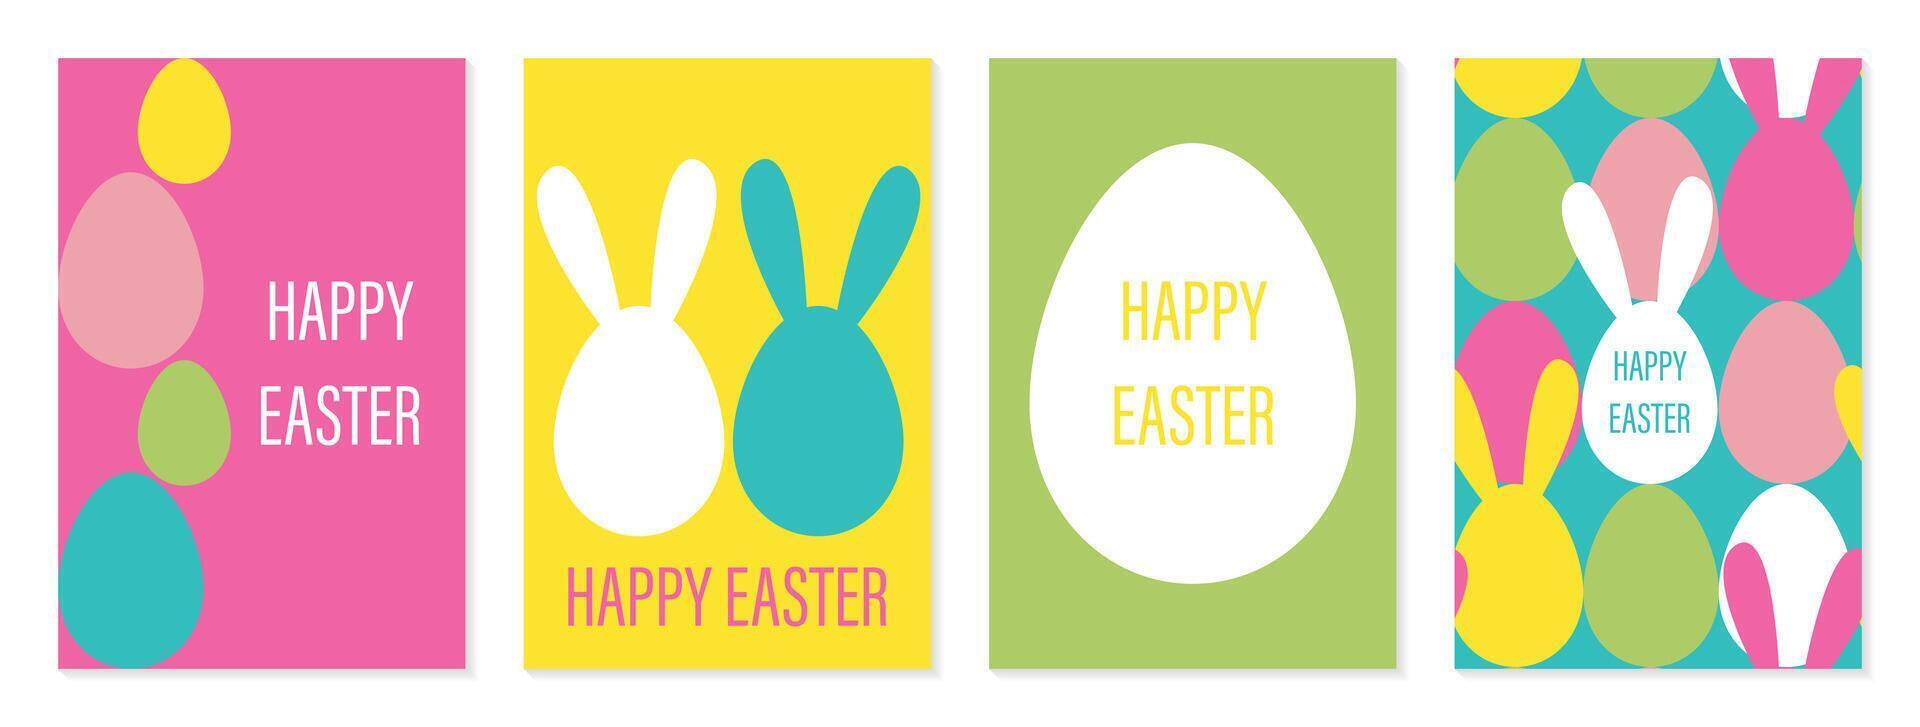 glücklich Ostern einstellen von Poster, Karten oder Abdeckungen im modern minimalistisch Stil mit Eier und Hase Ohren. modisch süß Vorlagen zum Werbung, Marke, Herzliche Glückwünsche oder Einladungen vektor